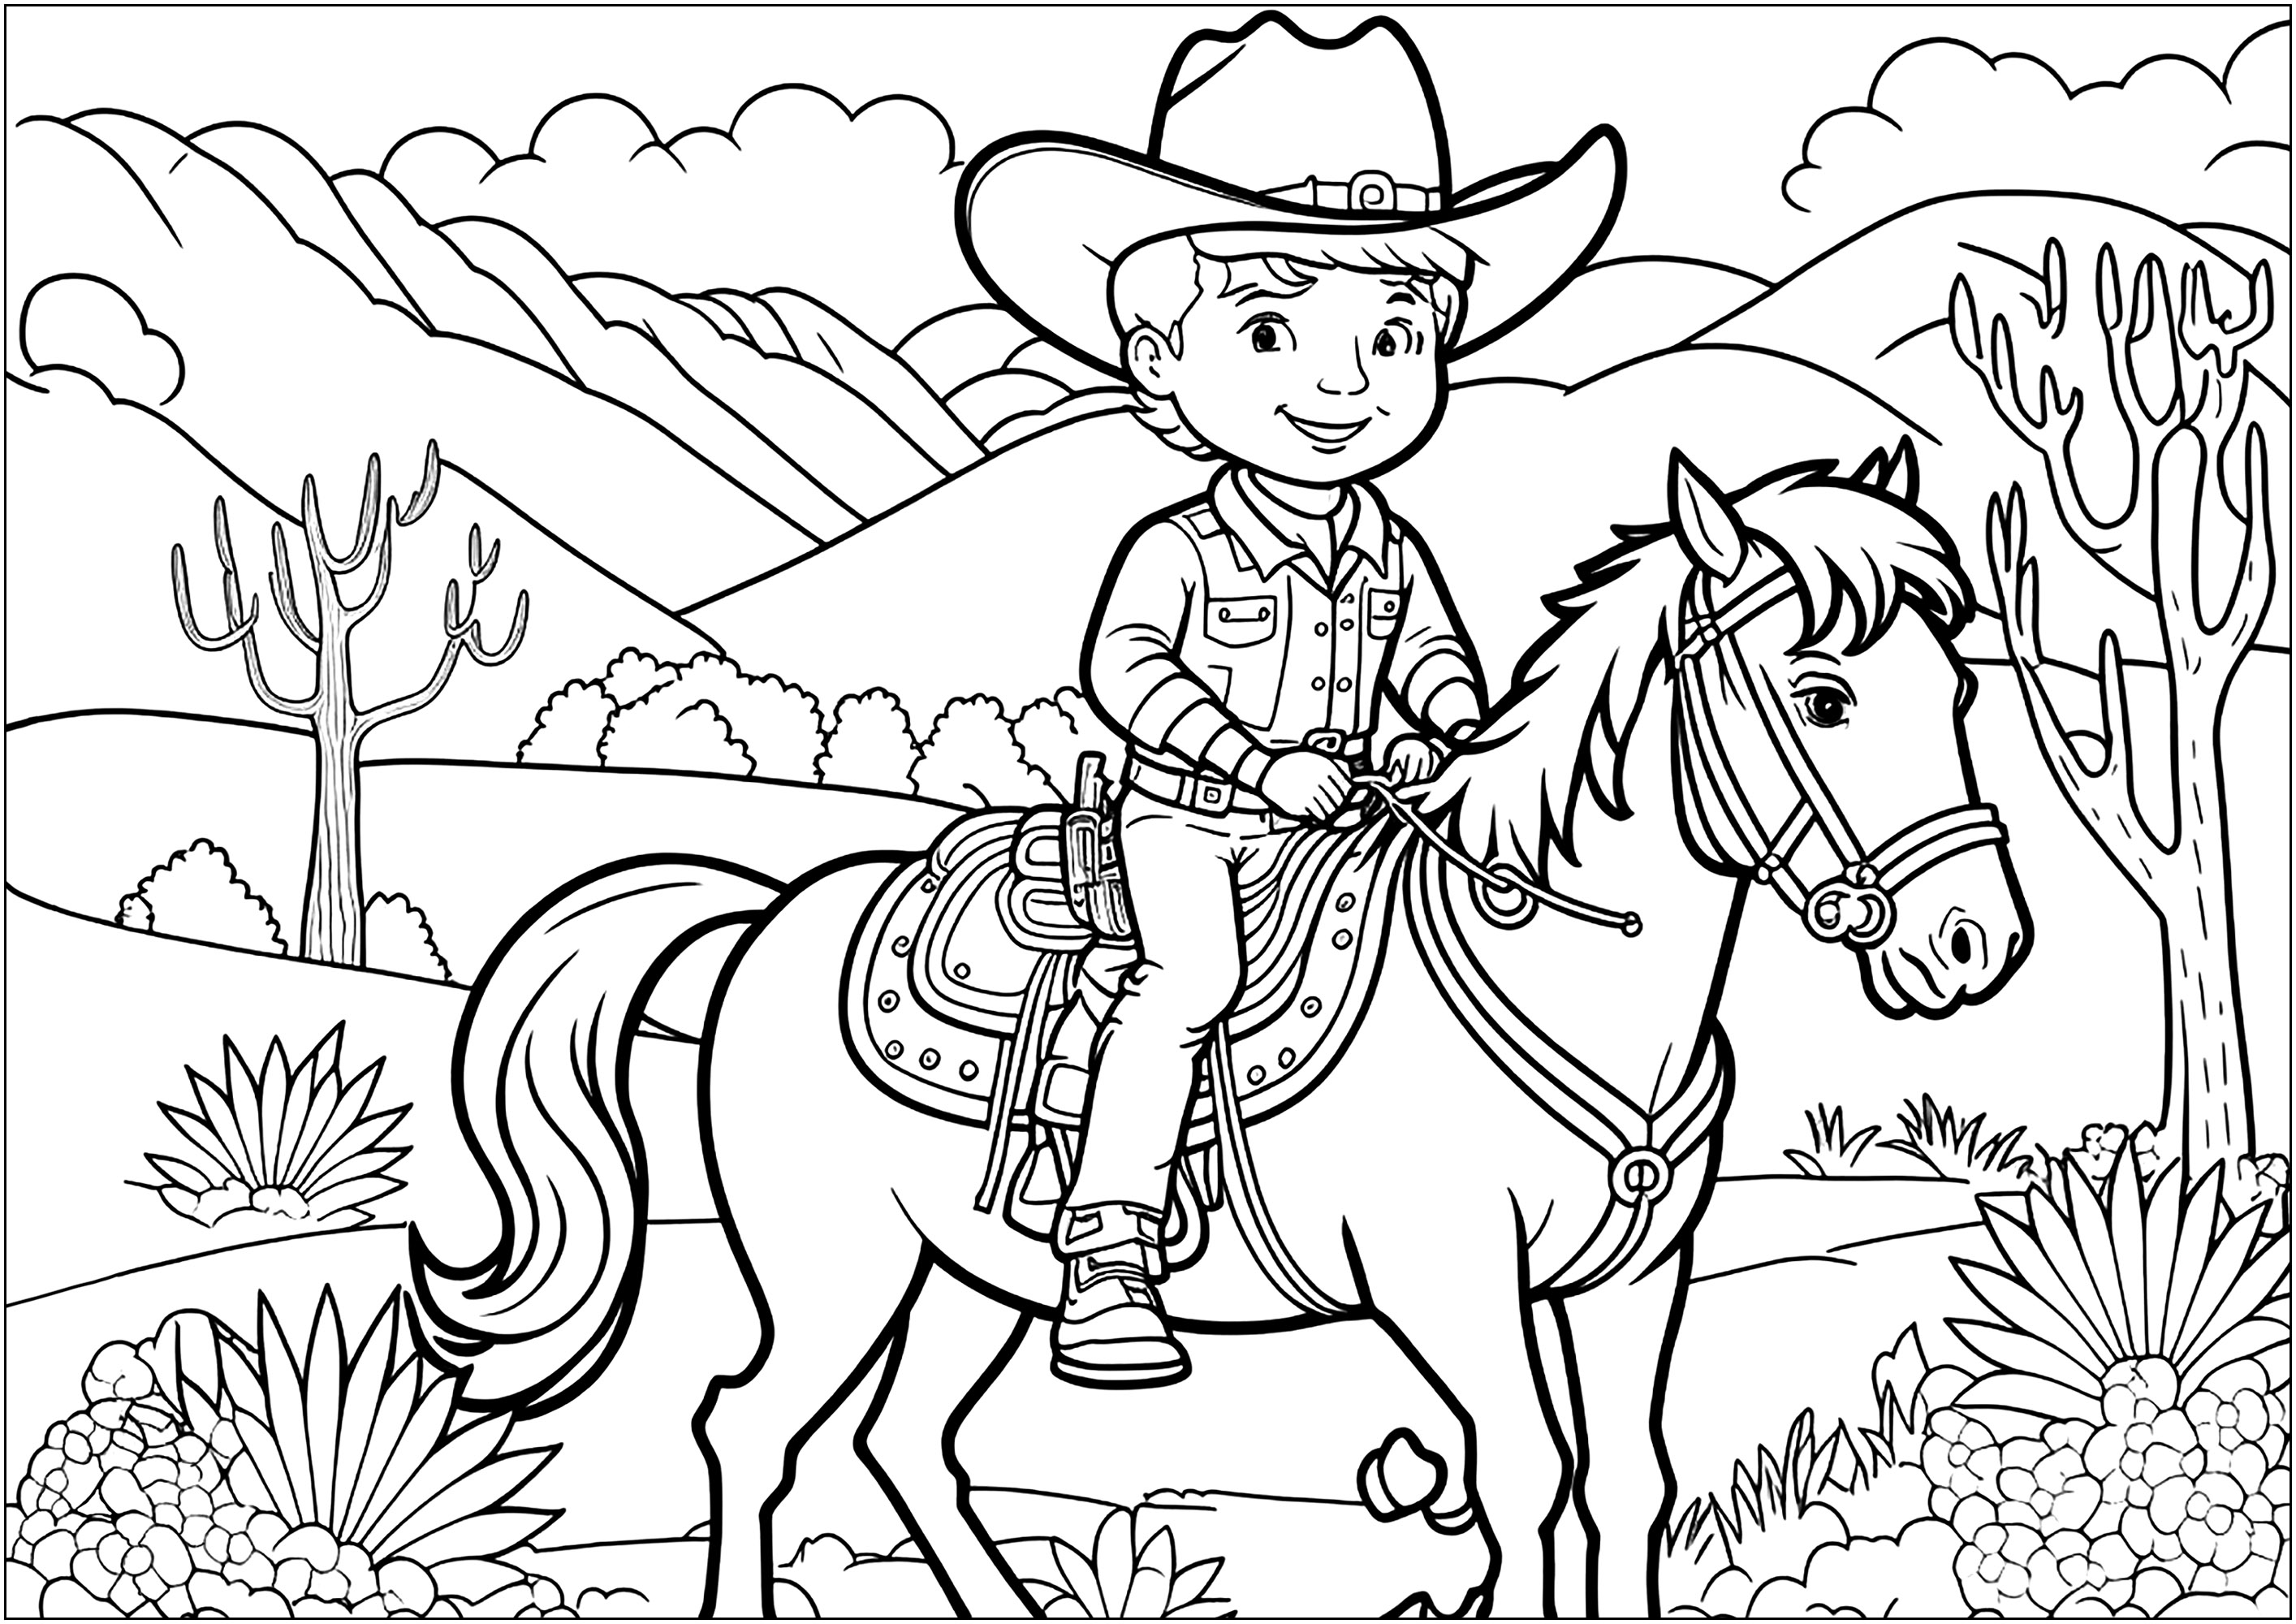 Um Cowboy orgulhoso no seu cavalo, numa paisagem parecida com a dos westerns